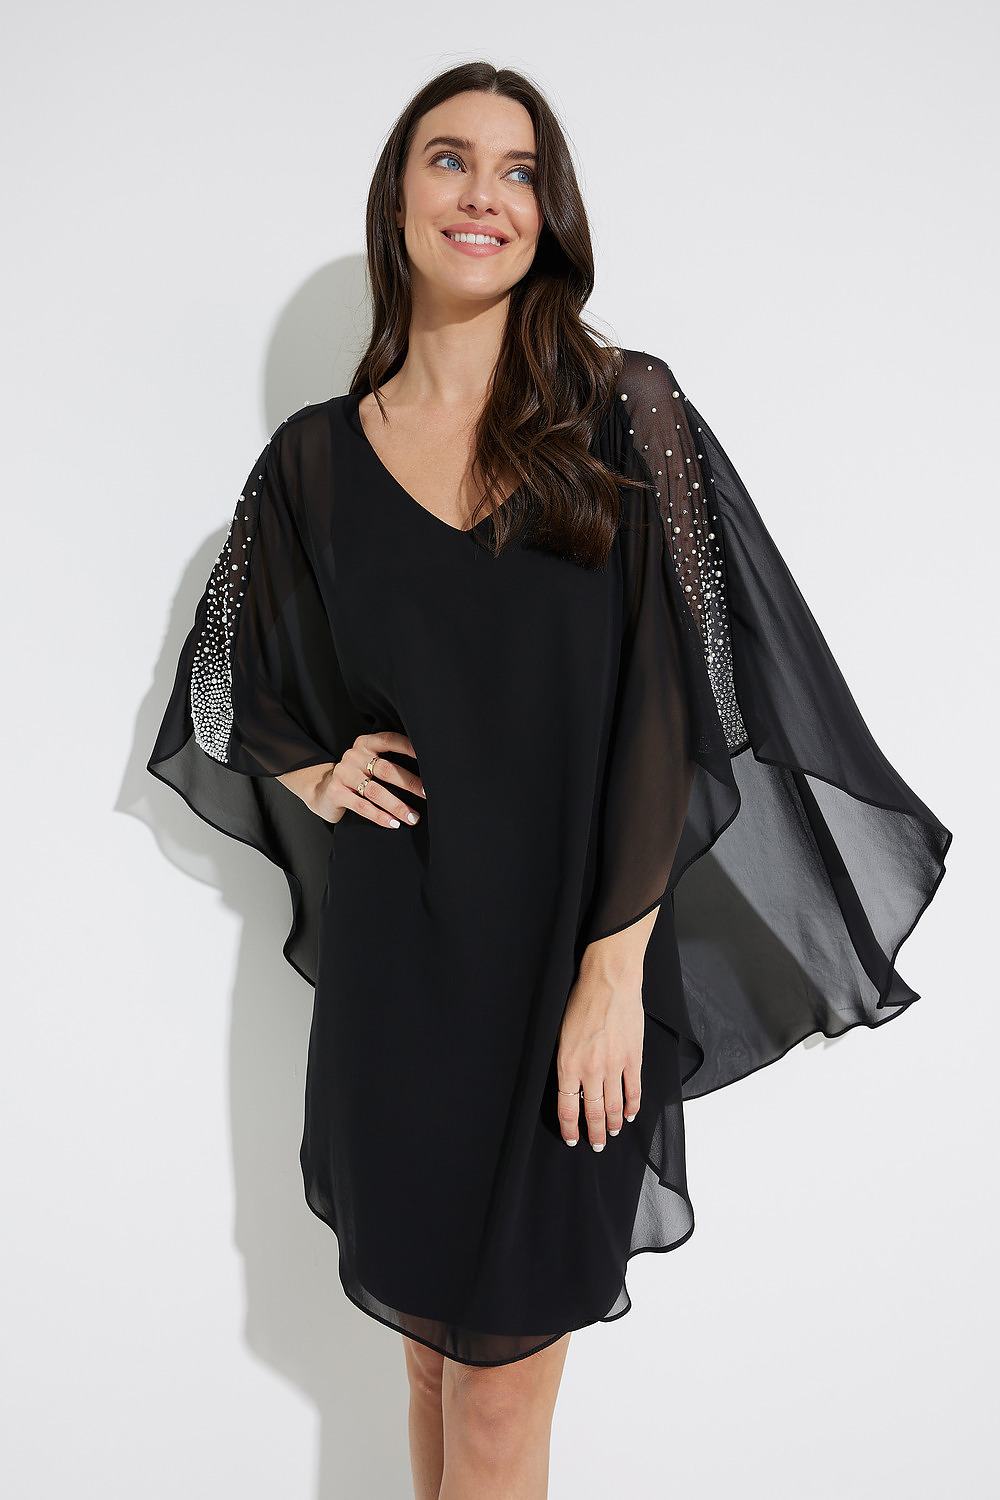 Joseph Ribkoff Chiffon Overlay Dress Style 223742. Black